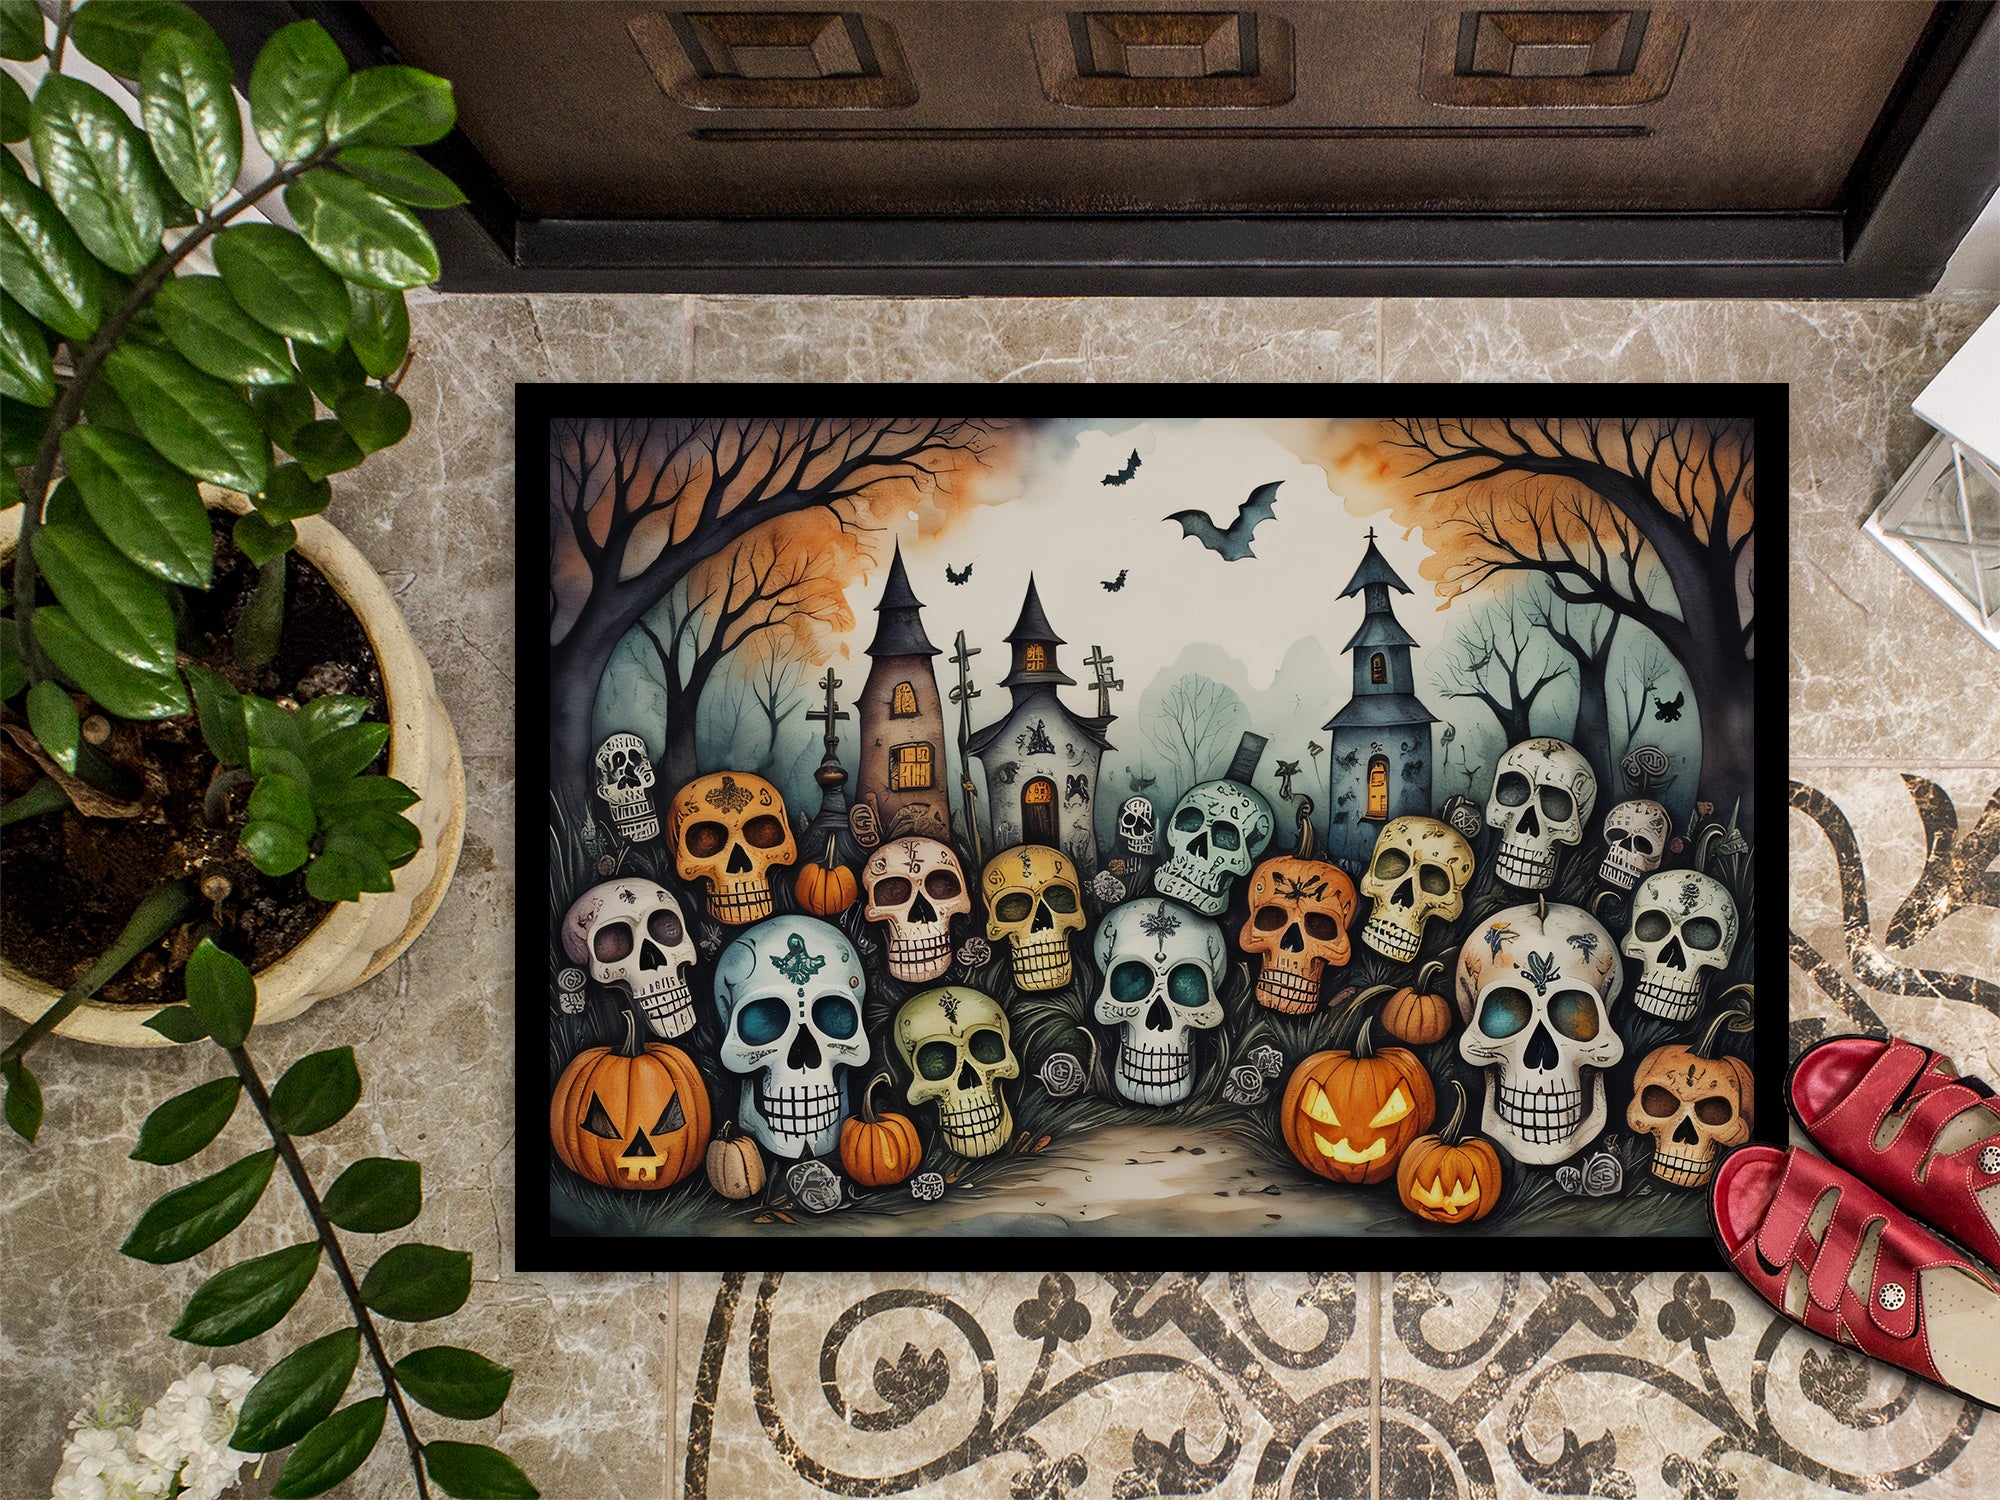 Calaveras Sugar Skulls Spooky Halloween Doormat 18x27